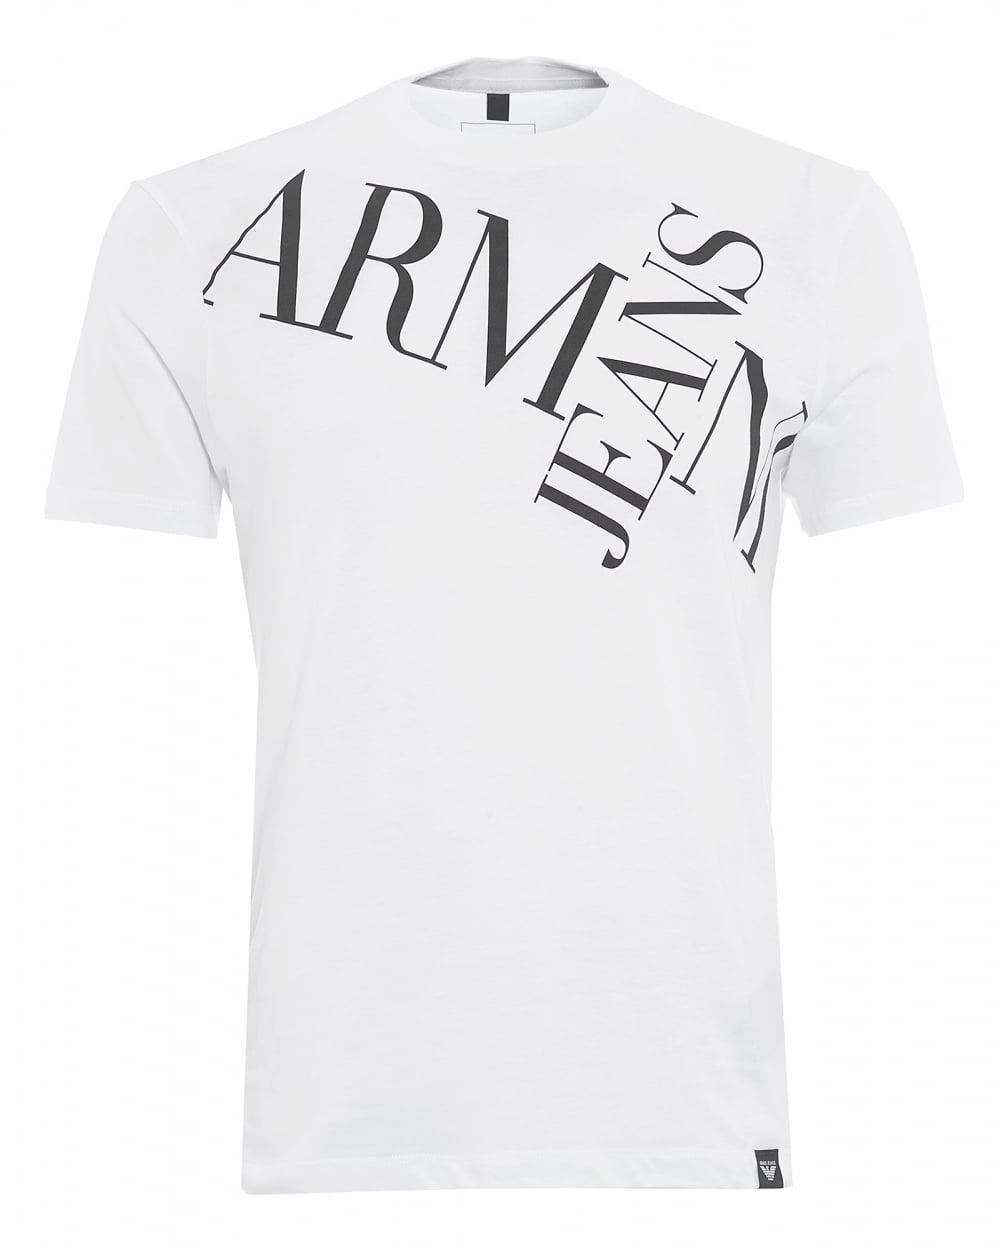 T and Cross Logo - Armani Jeans Mens Letter Cross T-Shirt, Letter Logo White Tee